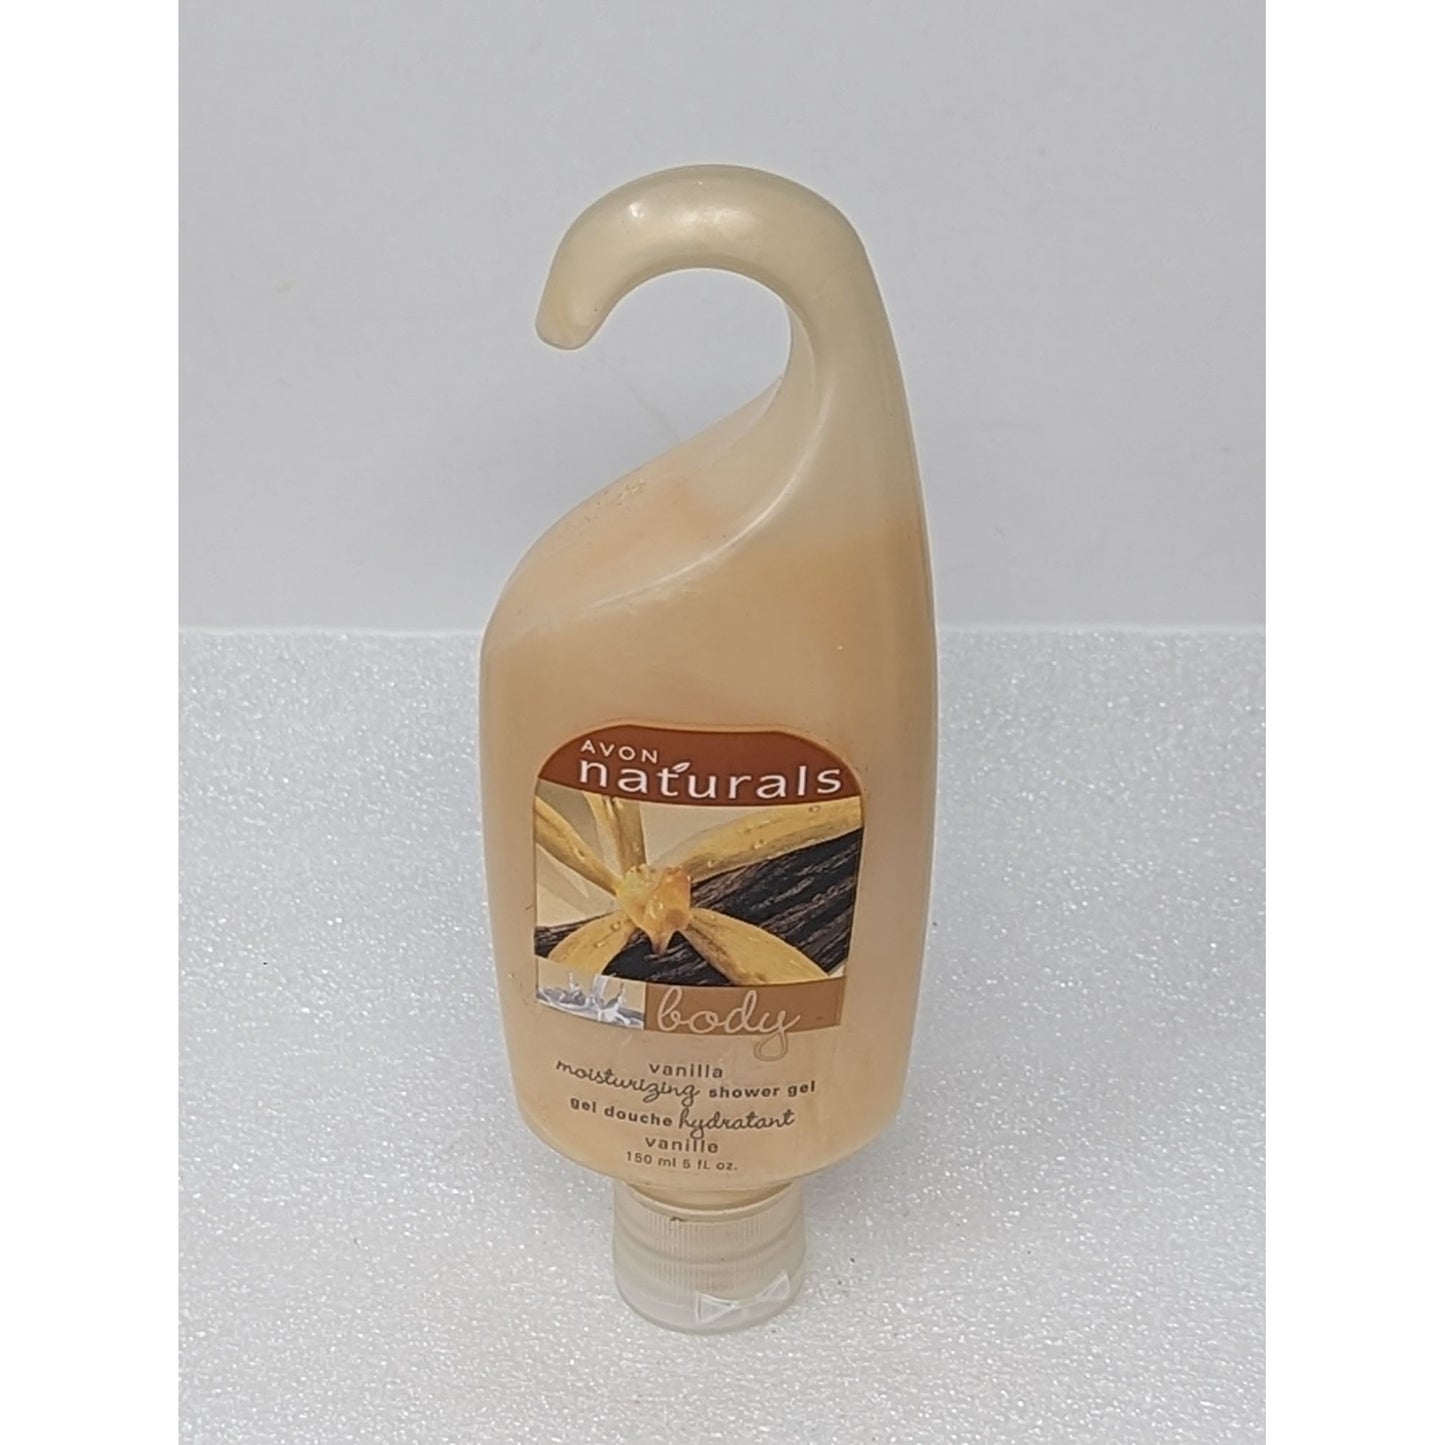 Avon Naturals Moisturizing Shower Gel Vanilla 5 oz